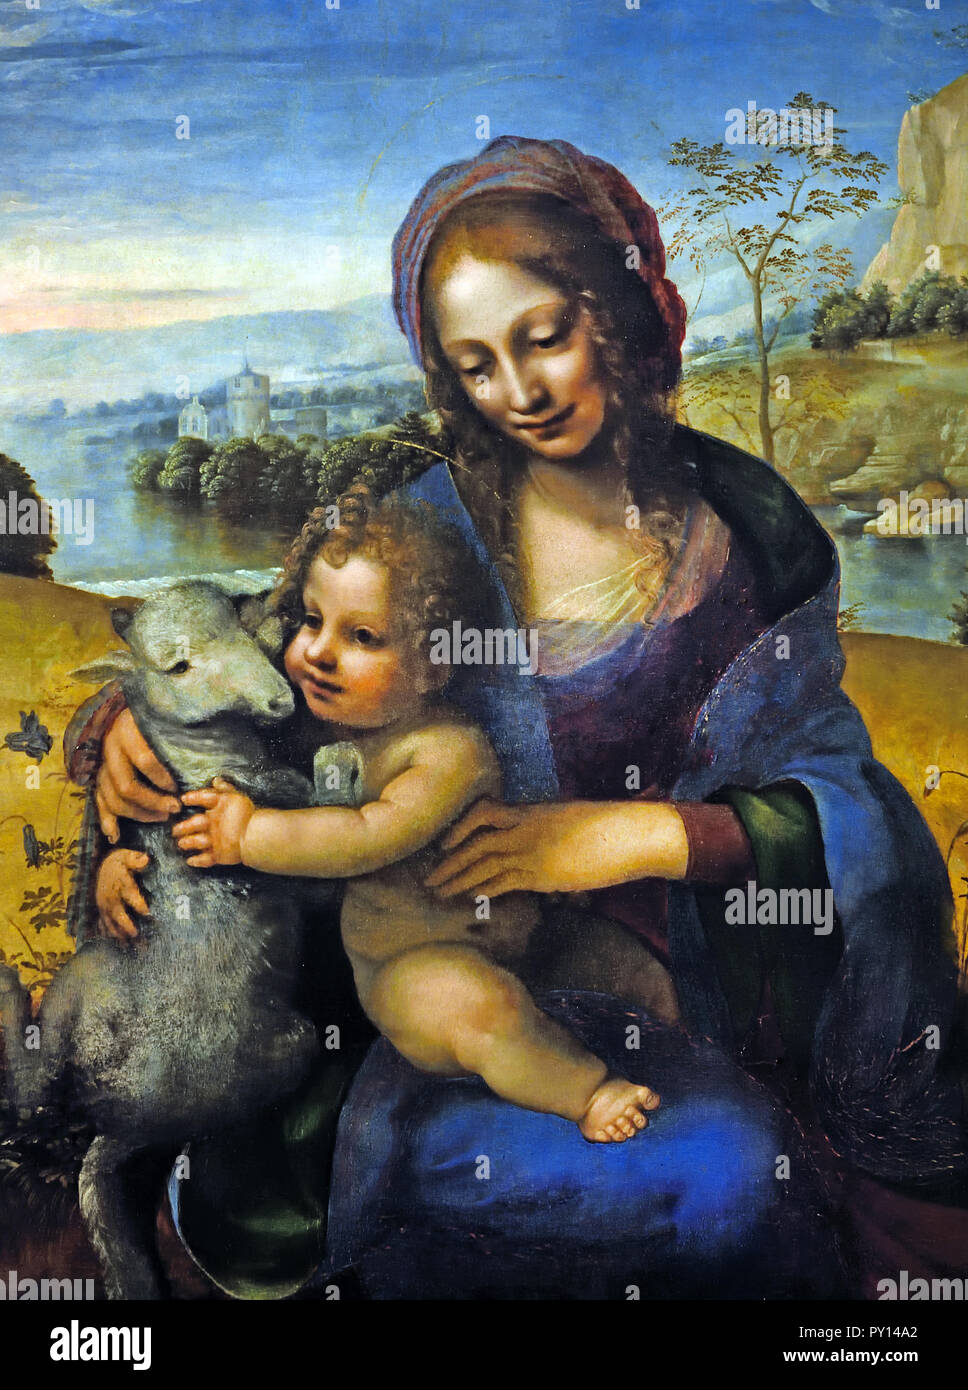 Madone et enfant avec un agneau (1480-1510) Fernando Llanos 15-16e siècle, peintre espagnol Banque D'Images